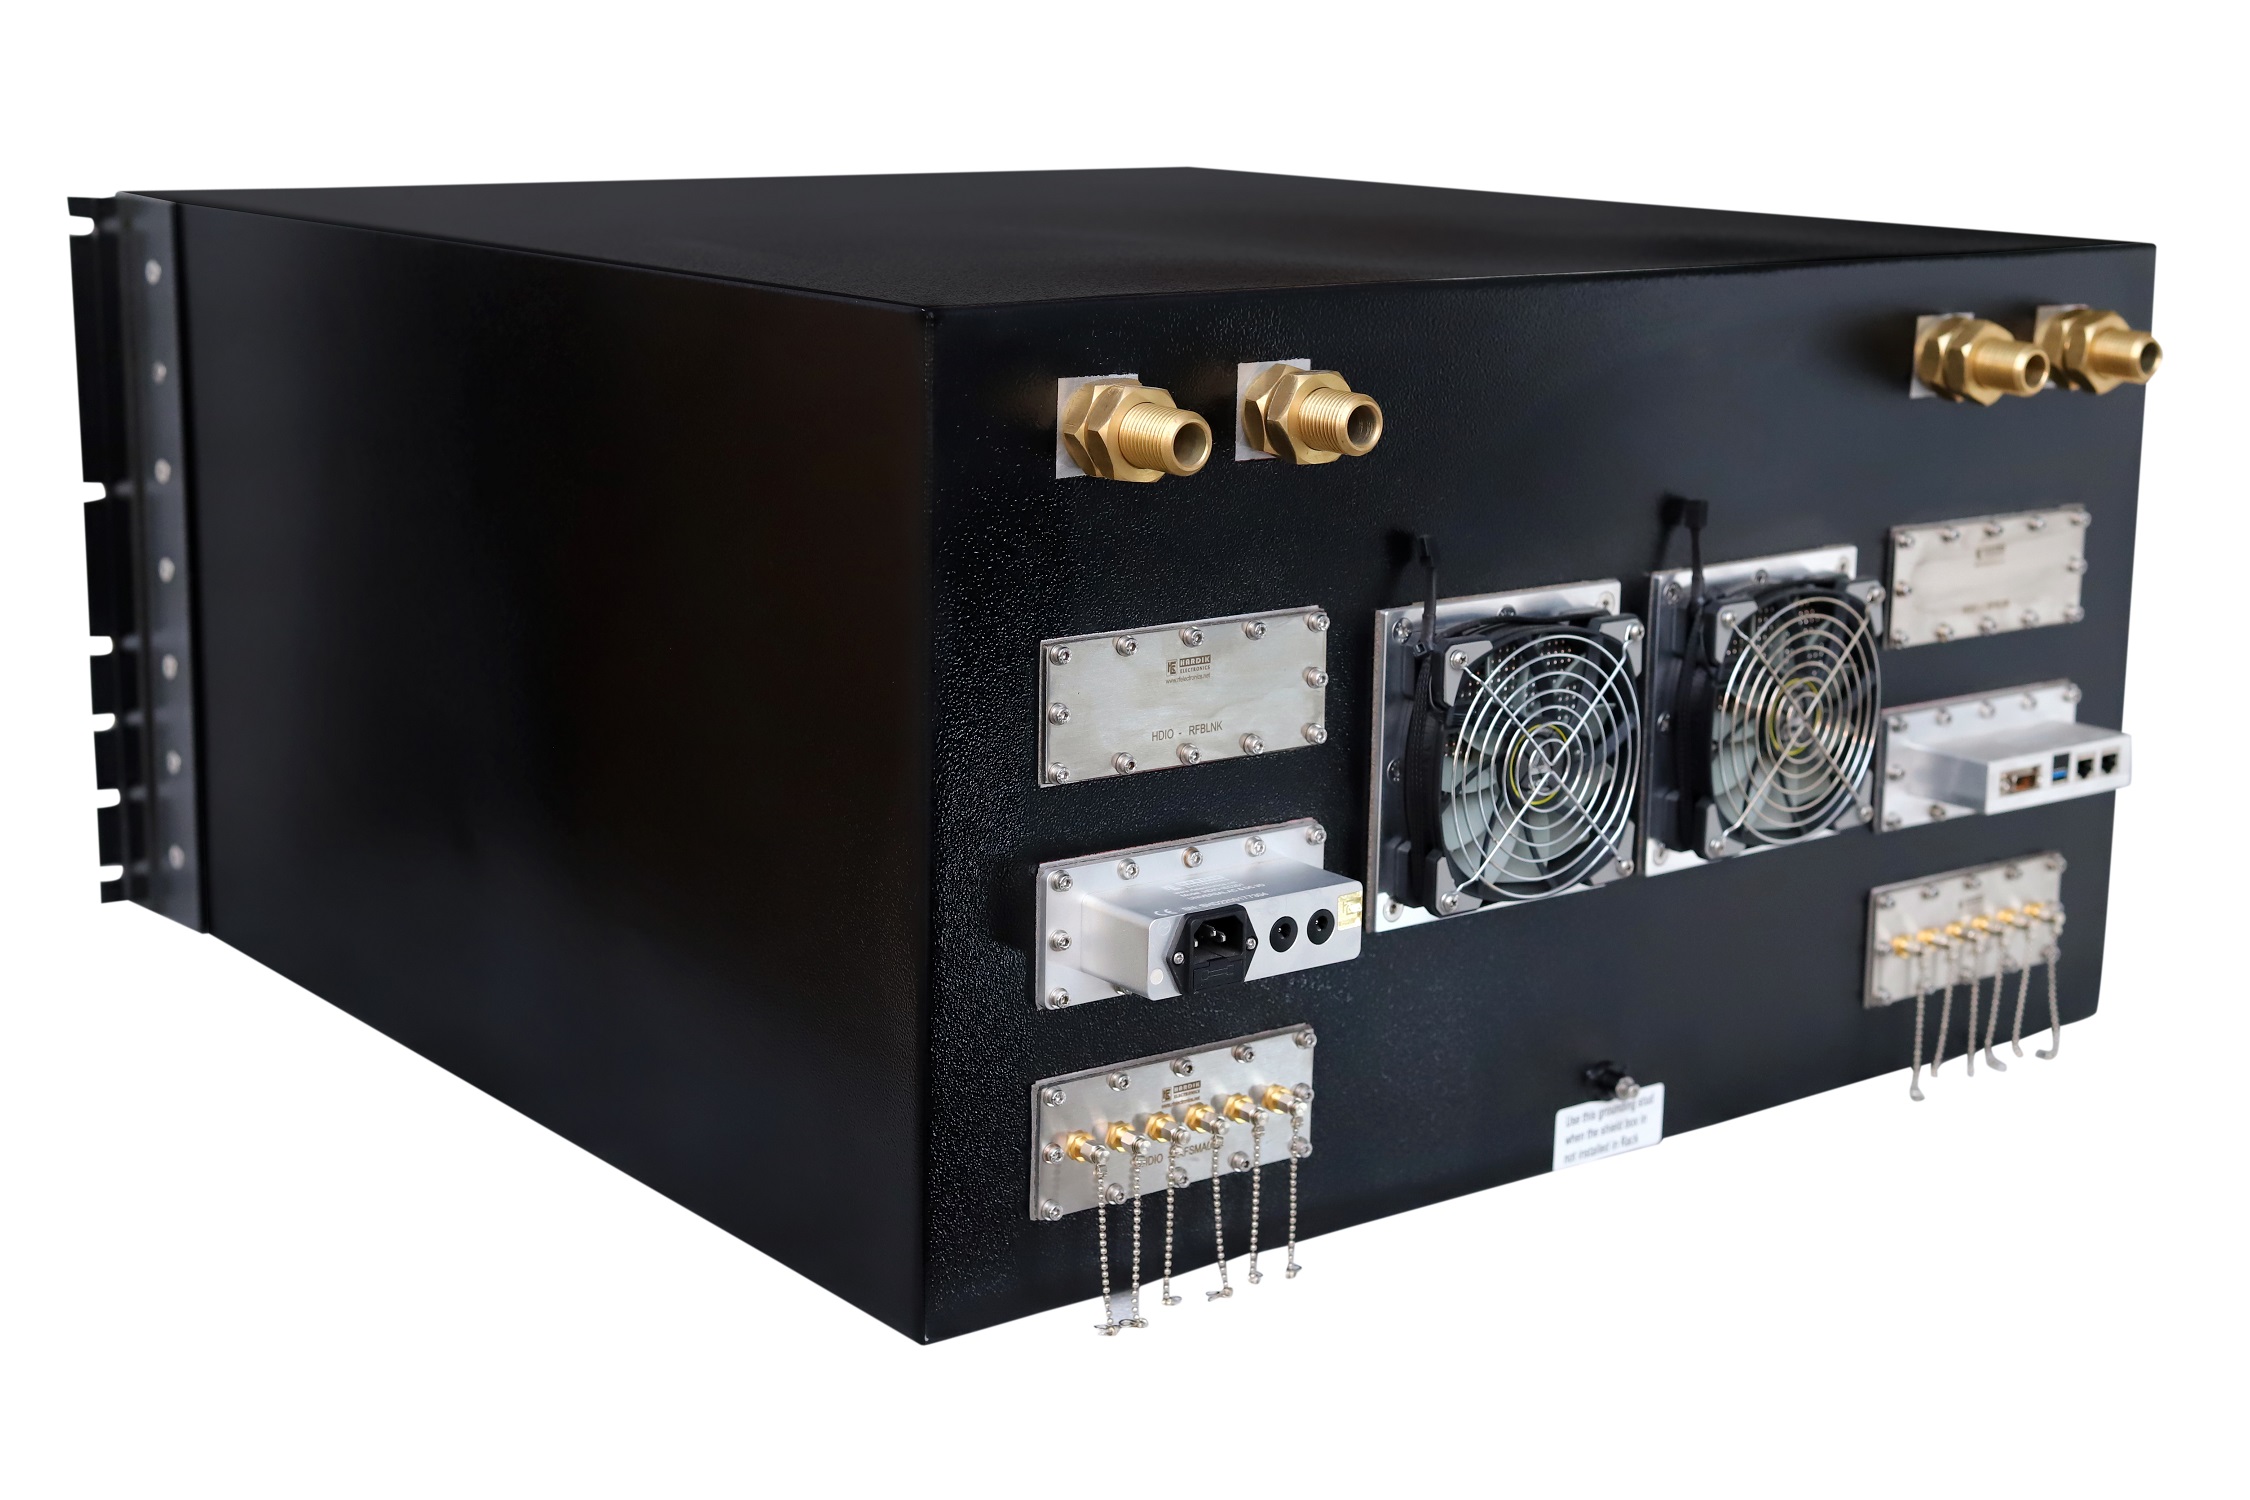 HDRF-8U3232 RF Shield Test Box